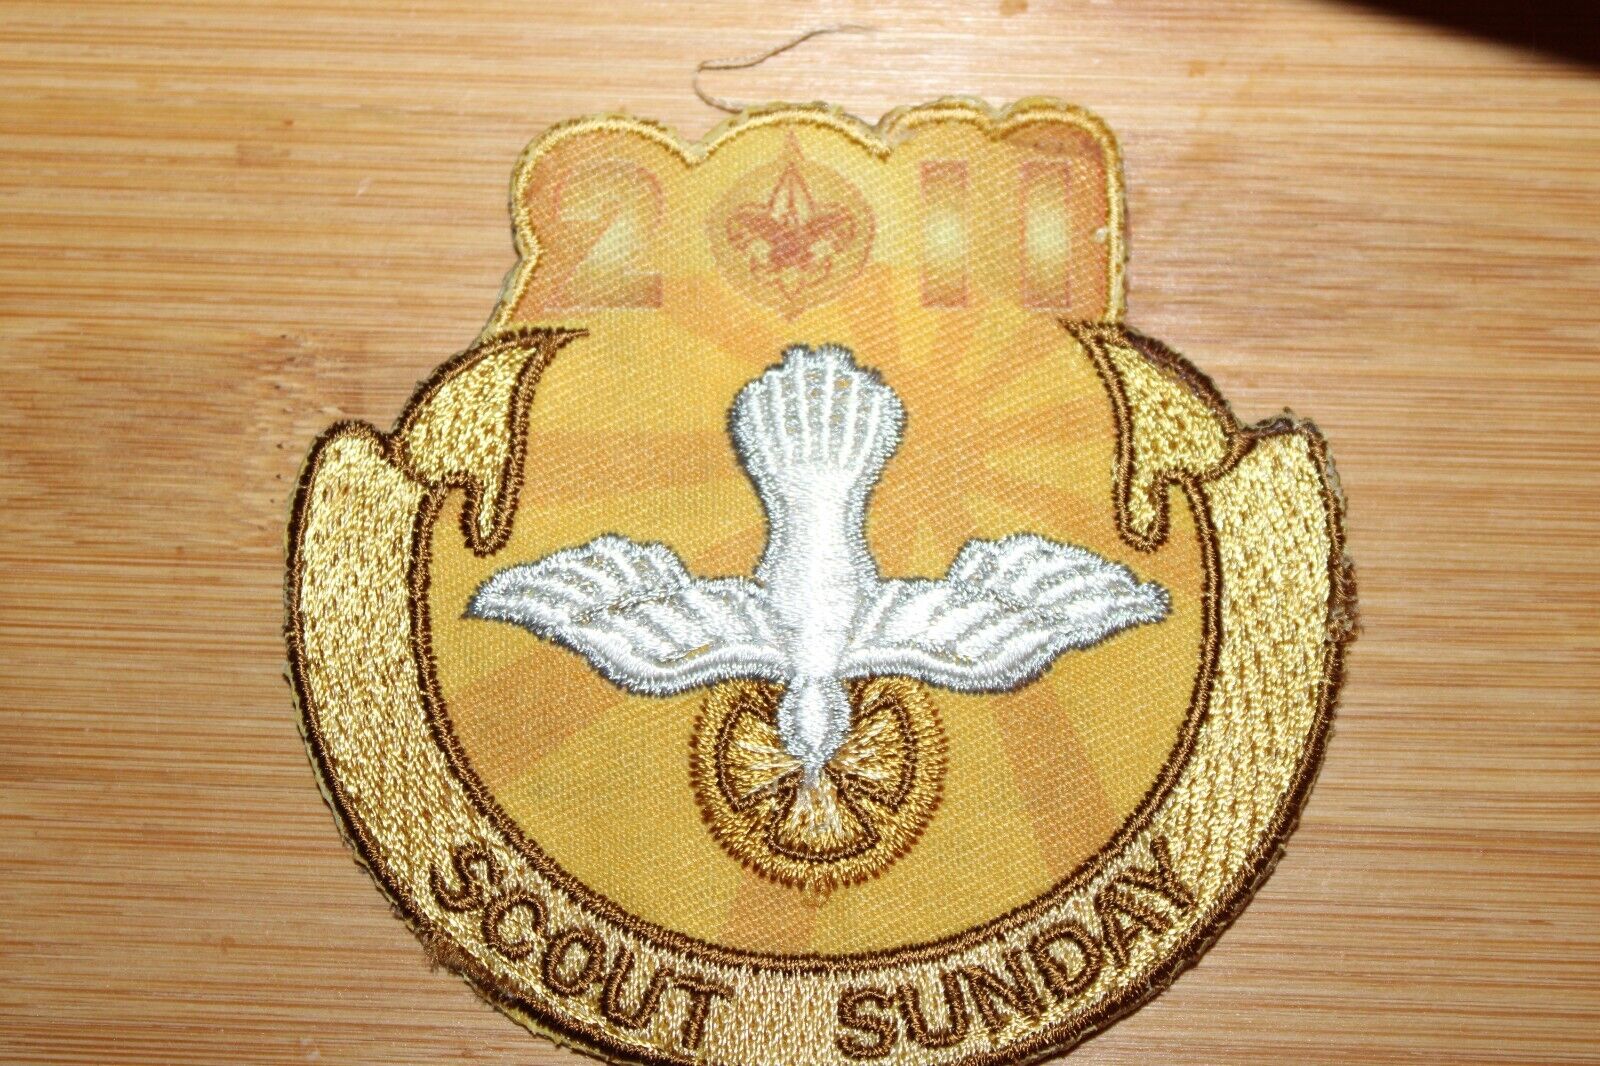 Sout Sunday Boy Scouts of America BSA Patch 2011